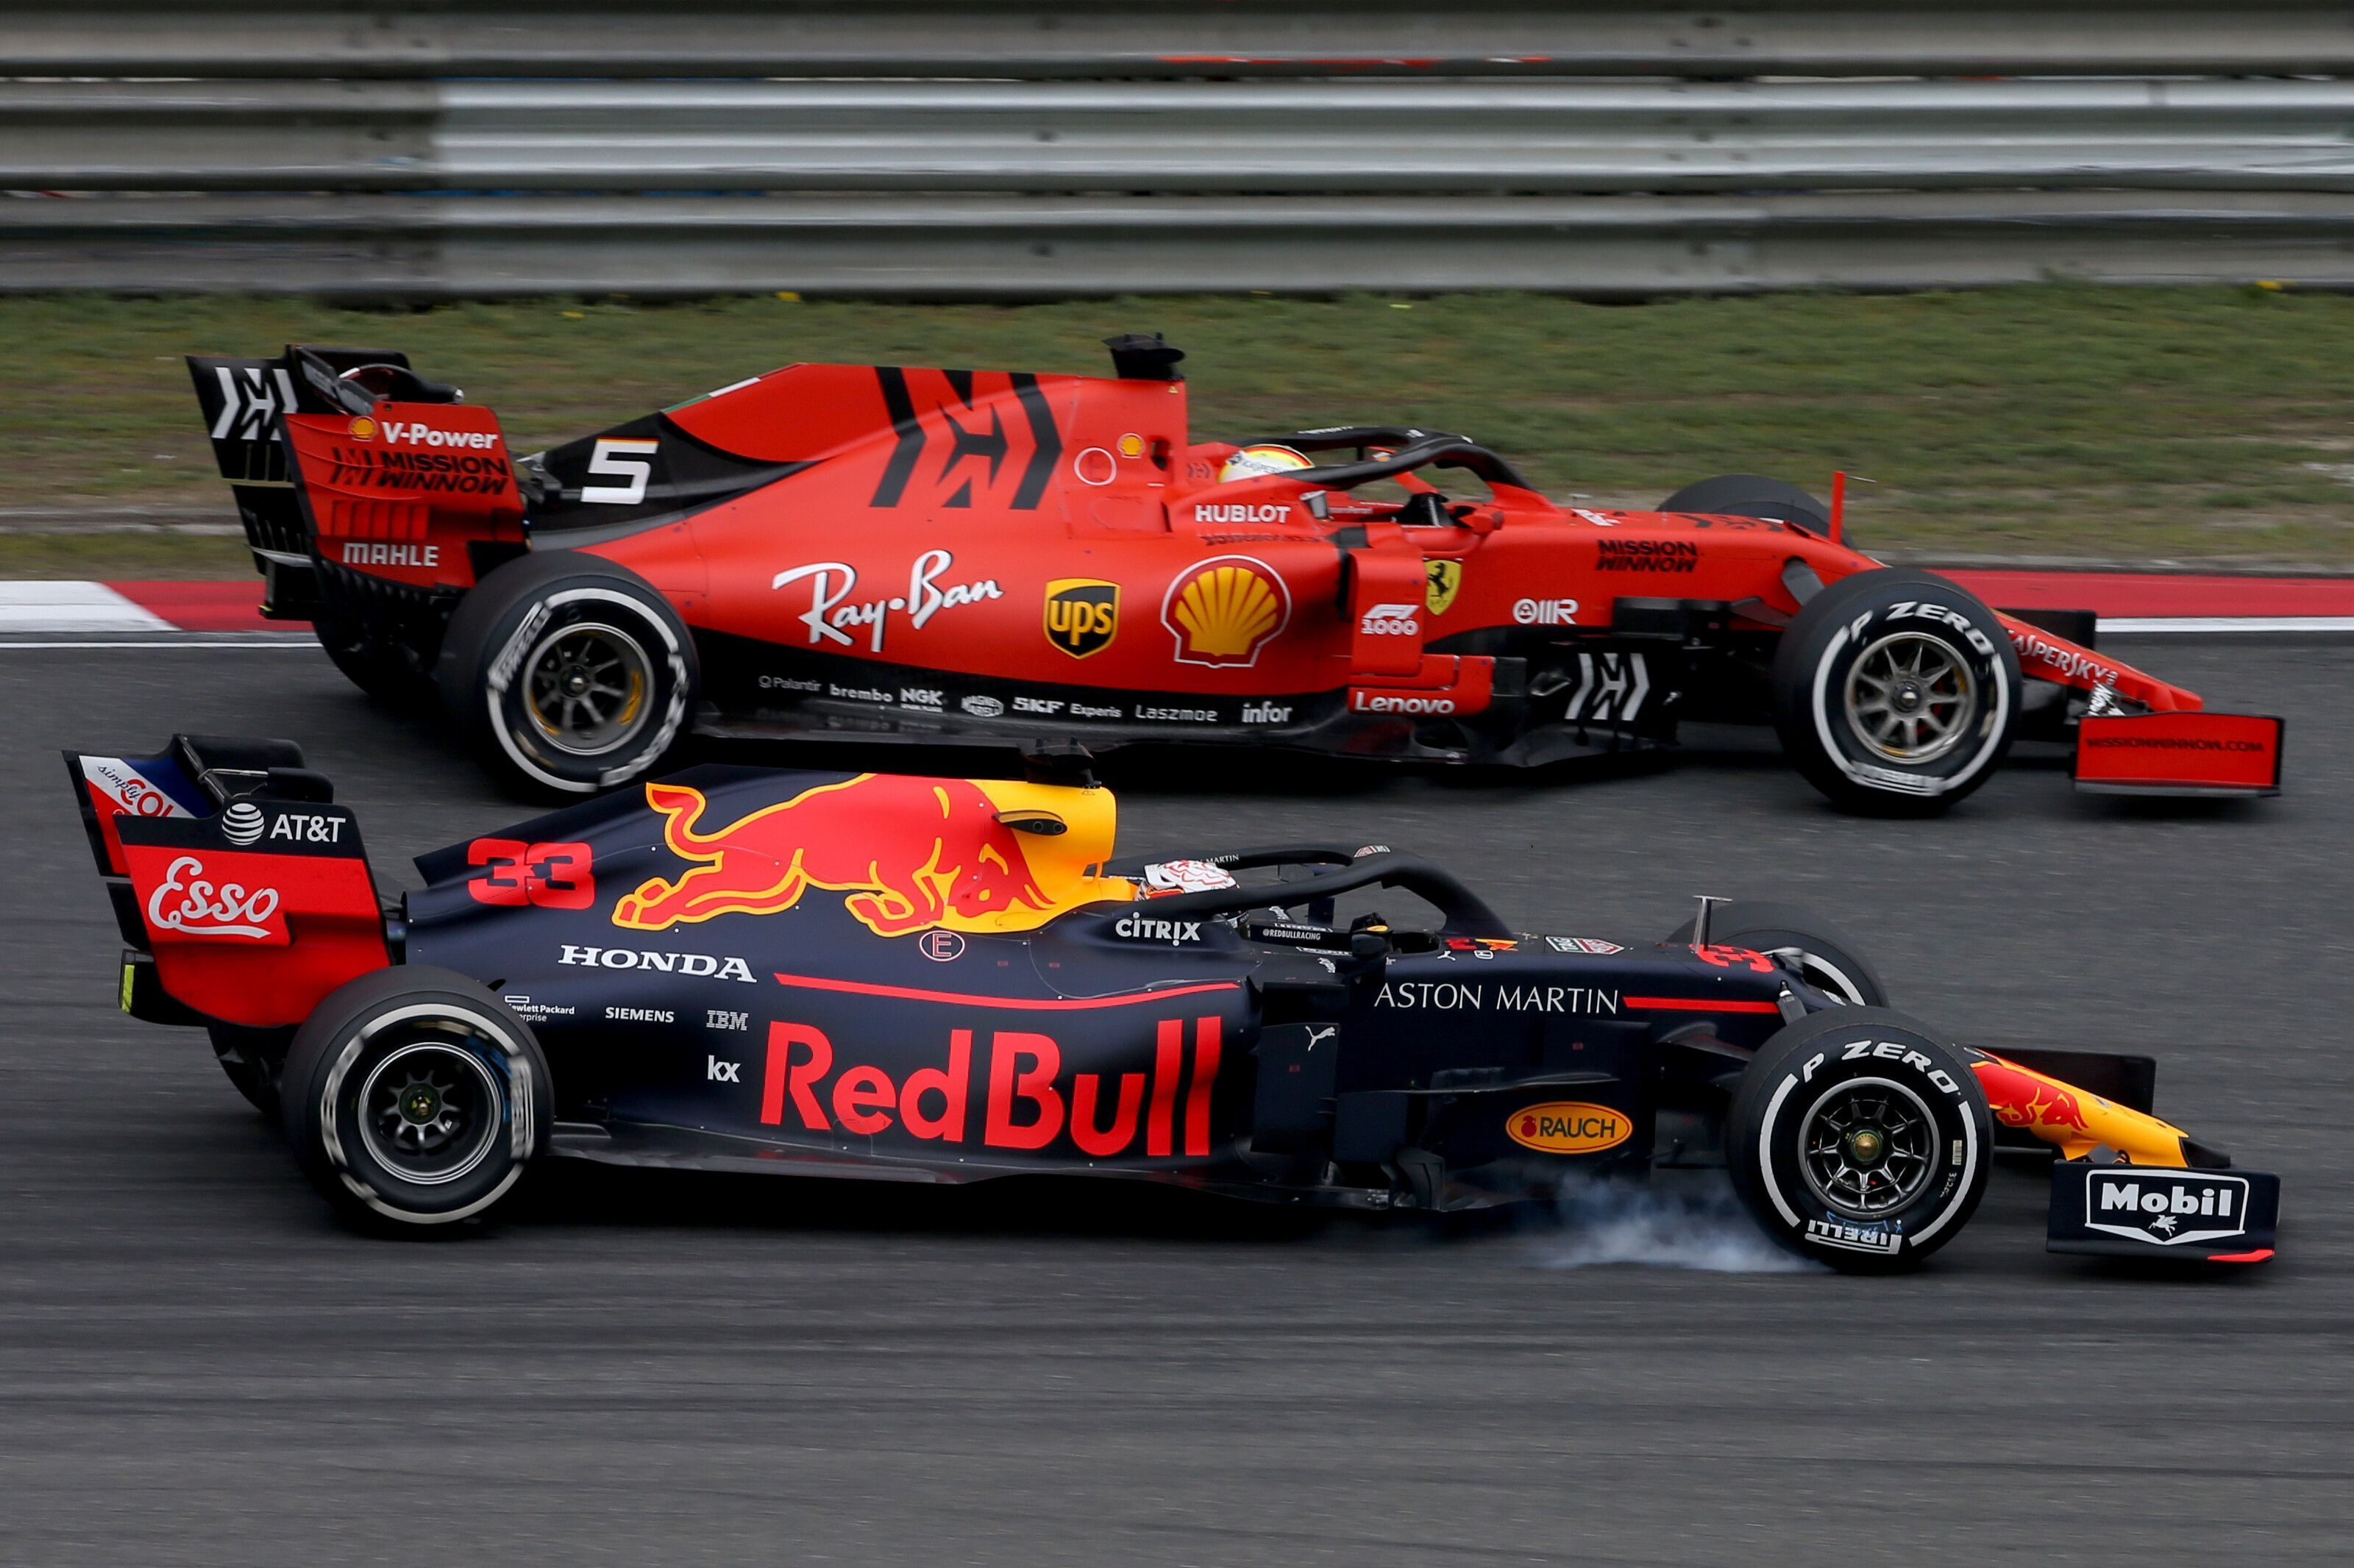 Max Verstappen up against Sebastian Vettel